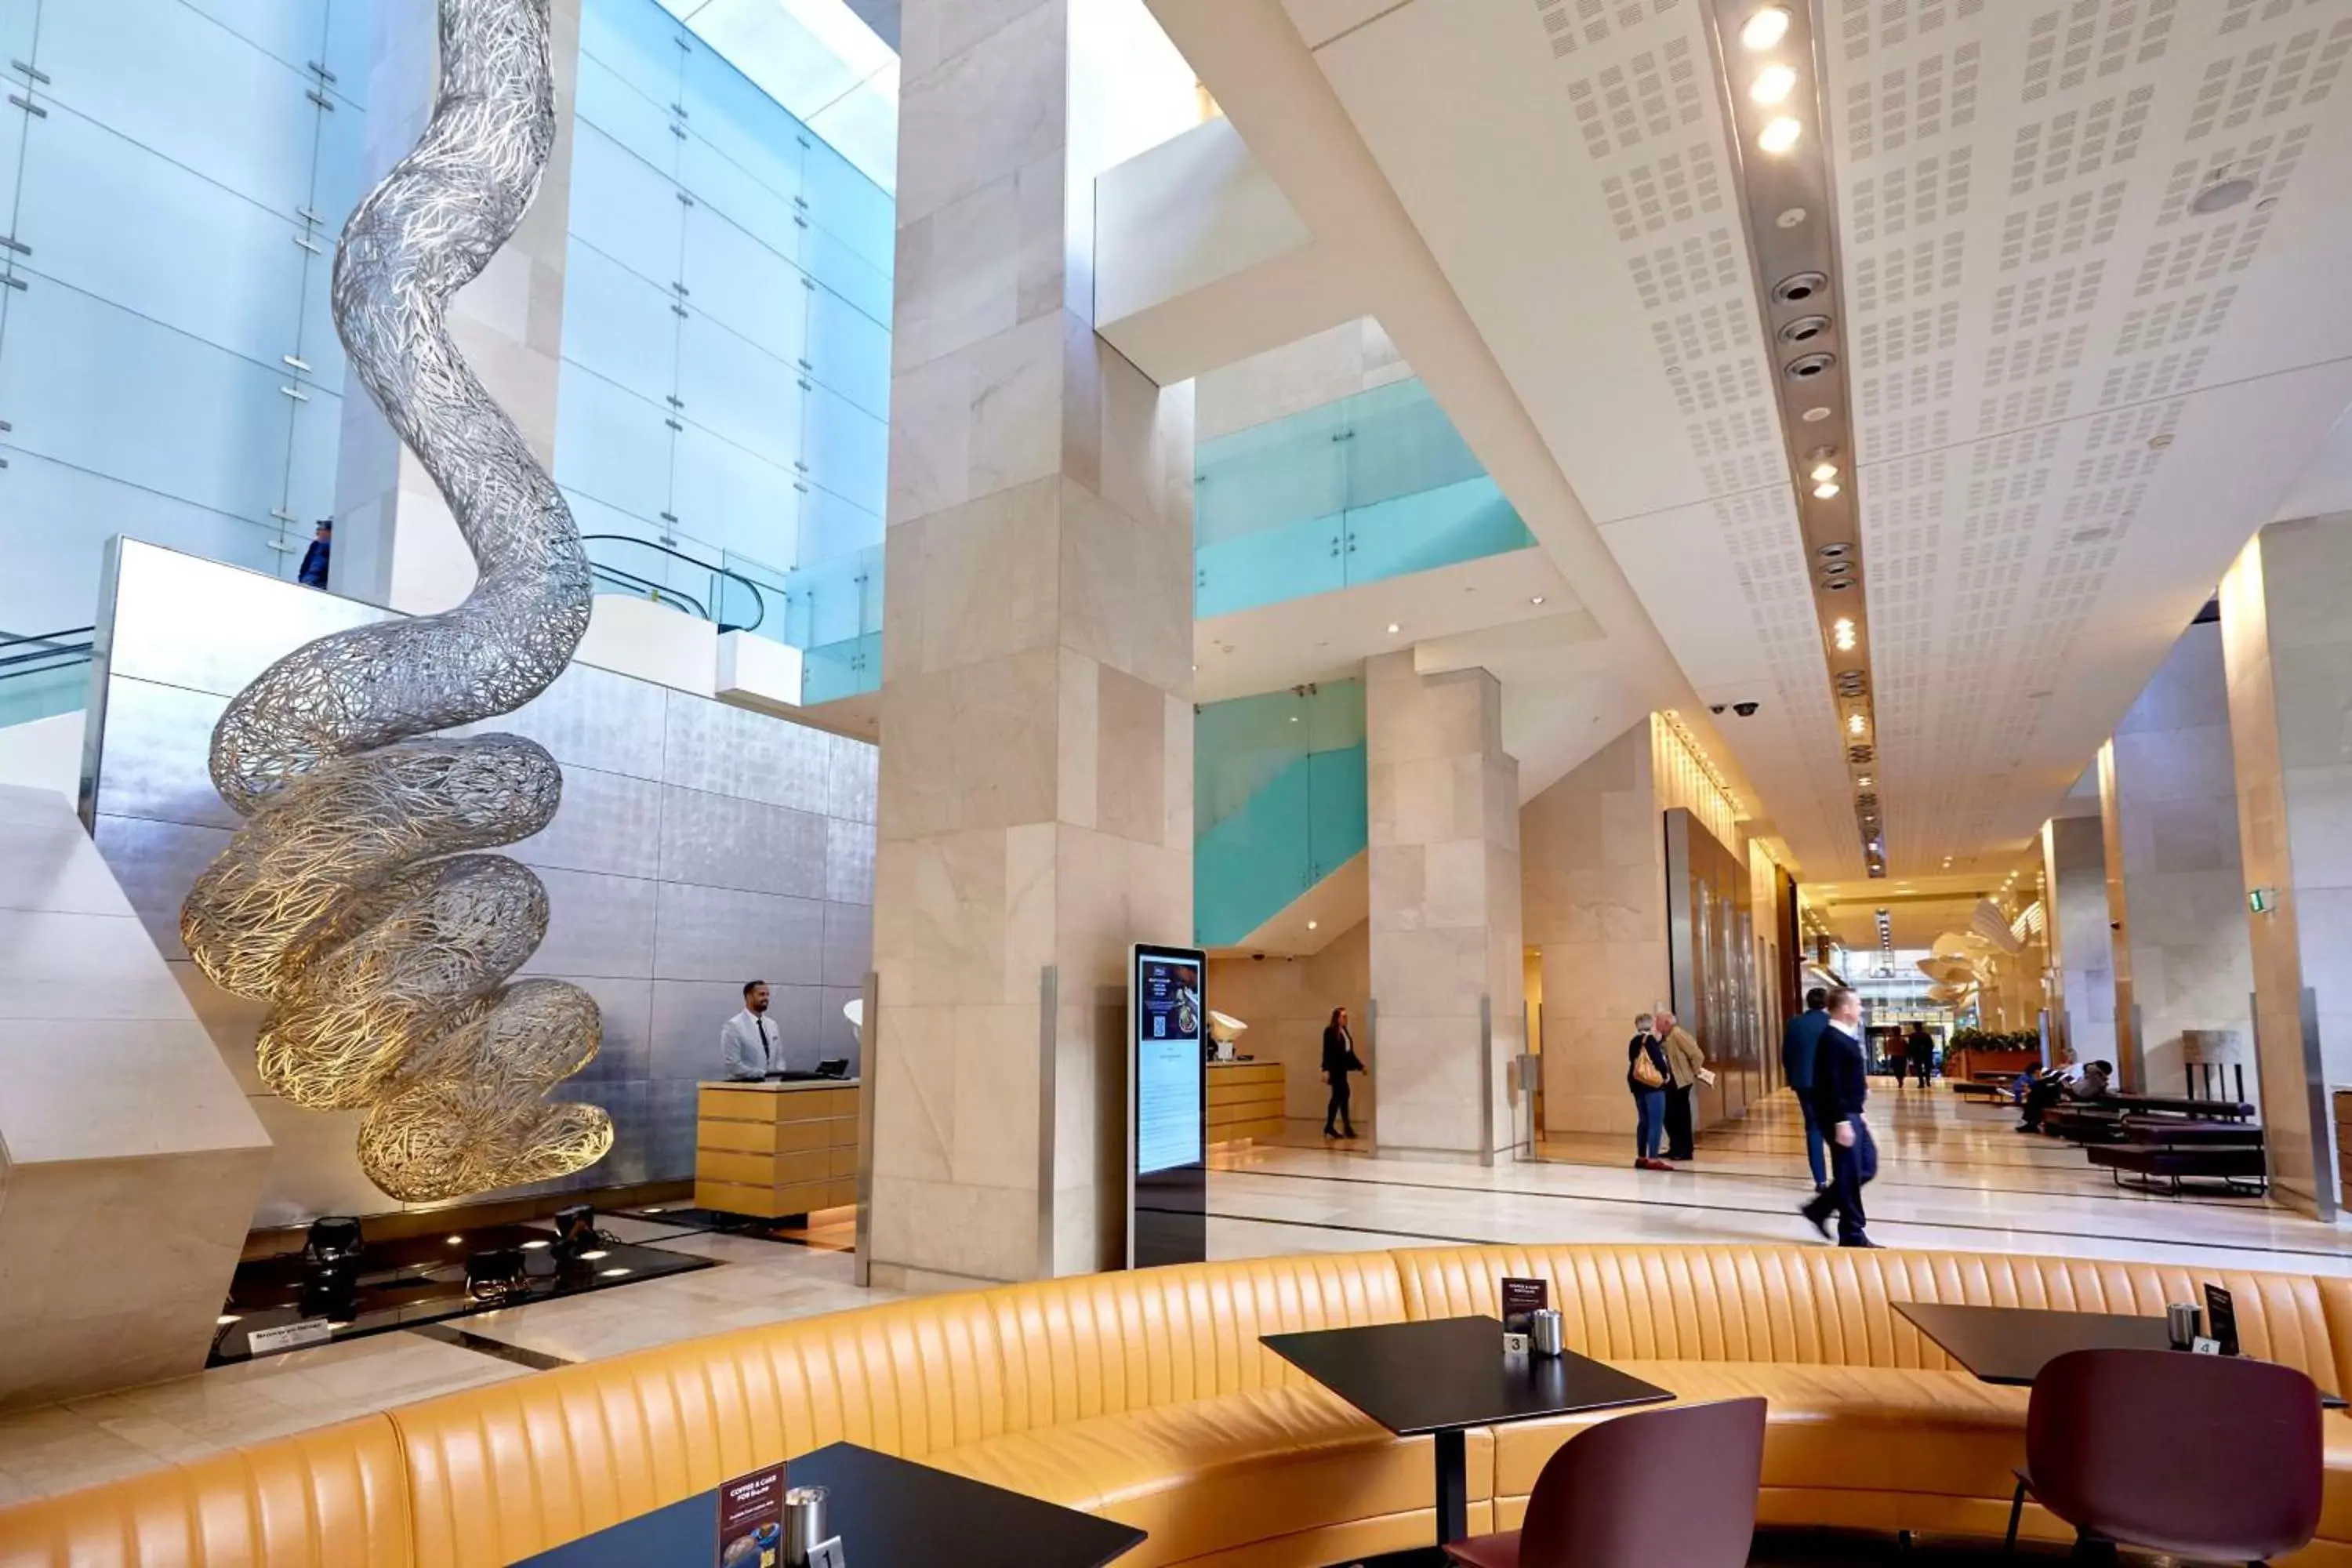 Lobby or reception in Hilton Sydney